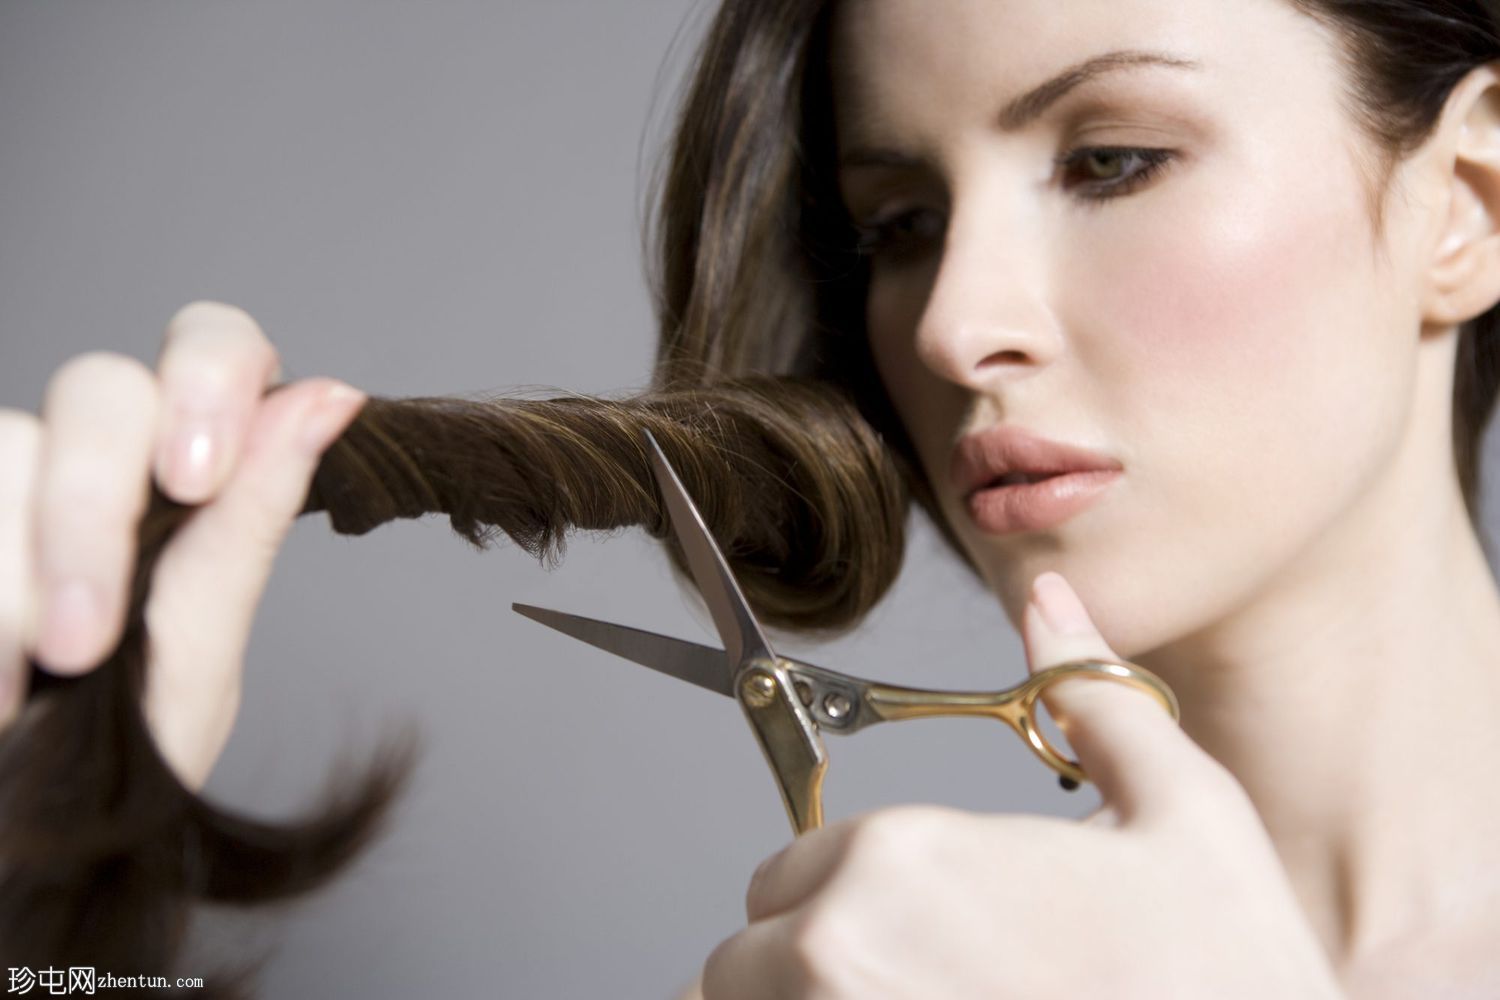 13种经过验证的自然头发再生技术和秃斑治疗